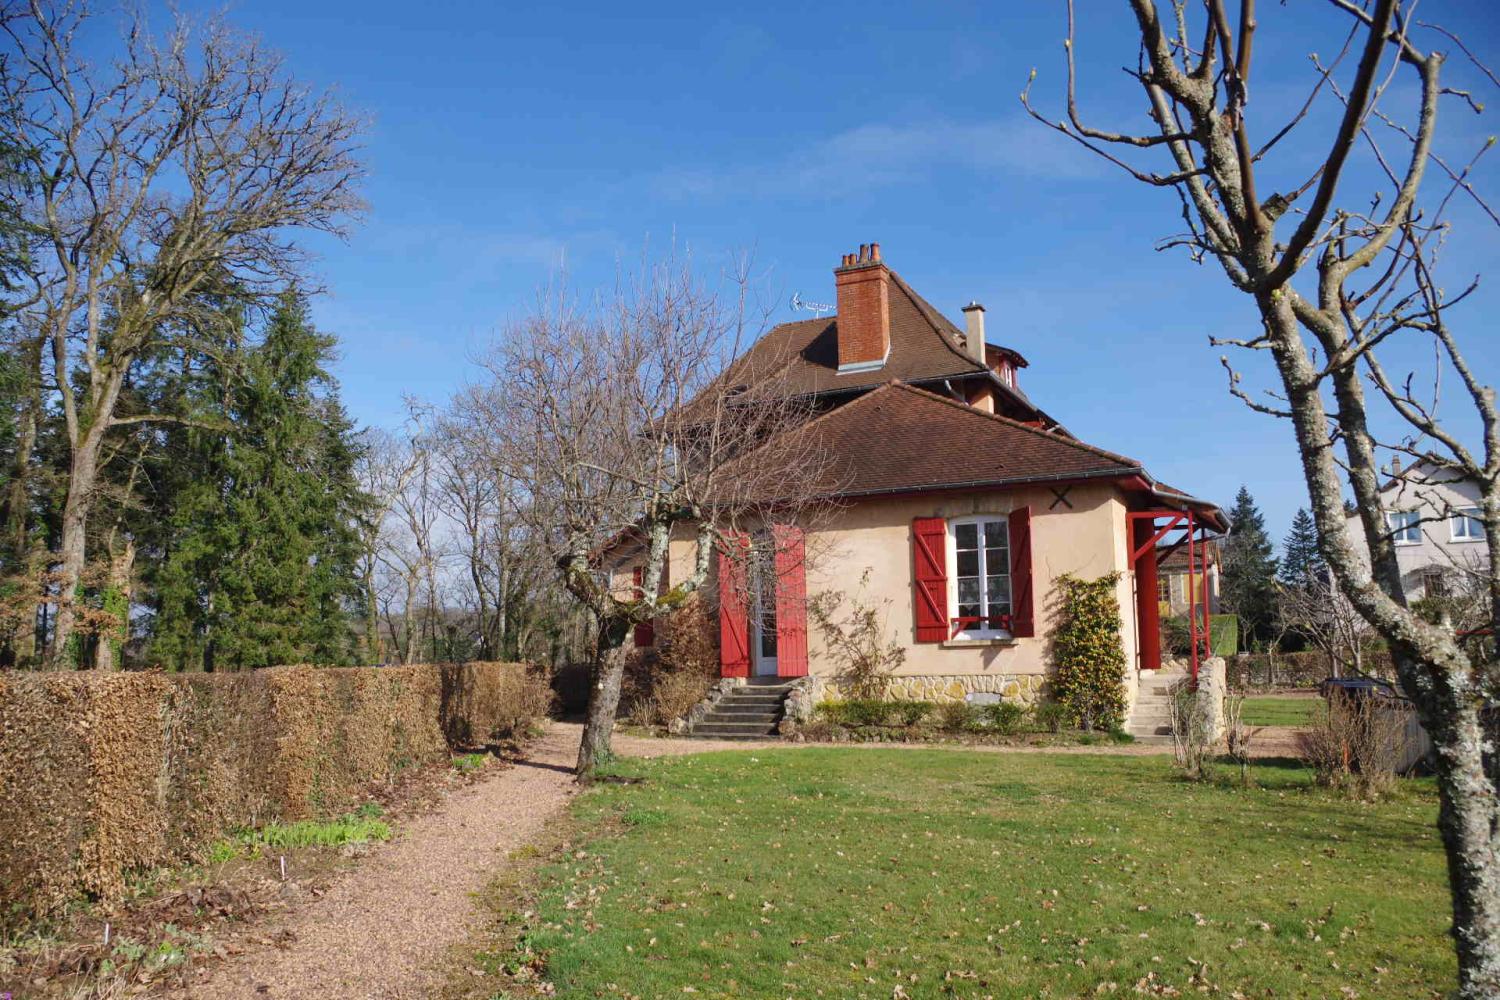  à vendre maison bourgeoise Saint-Honoré-Les-Bains Nièvre 11